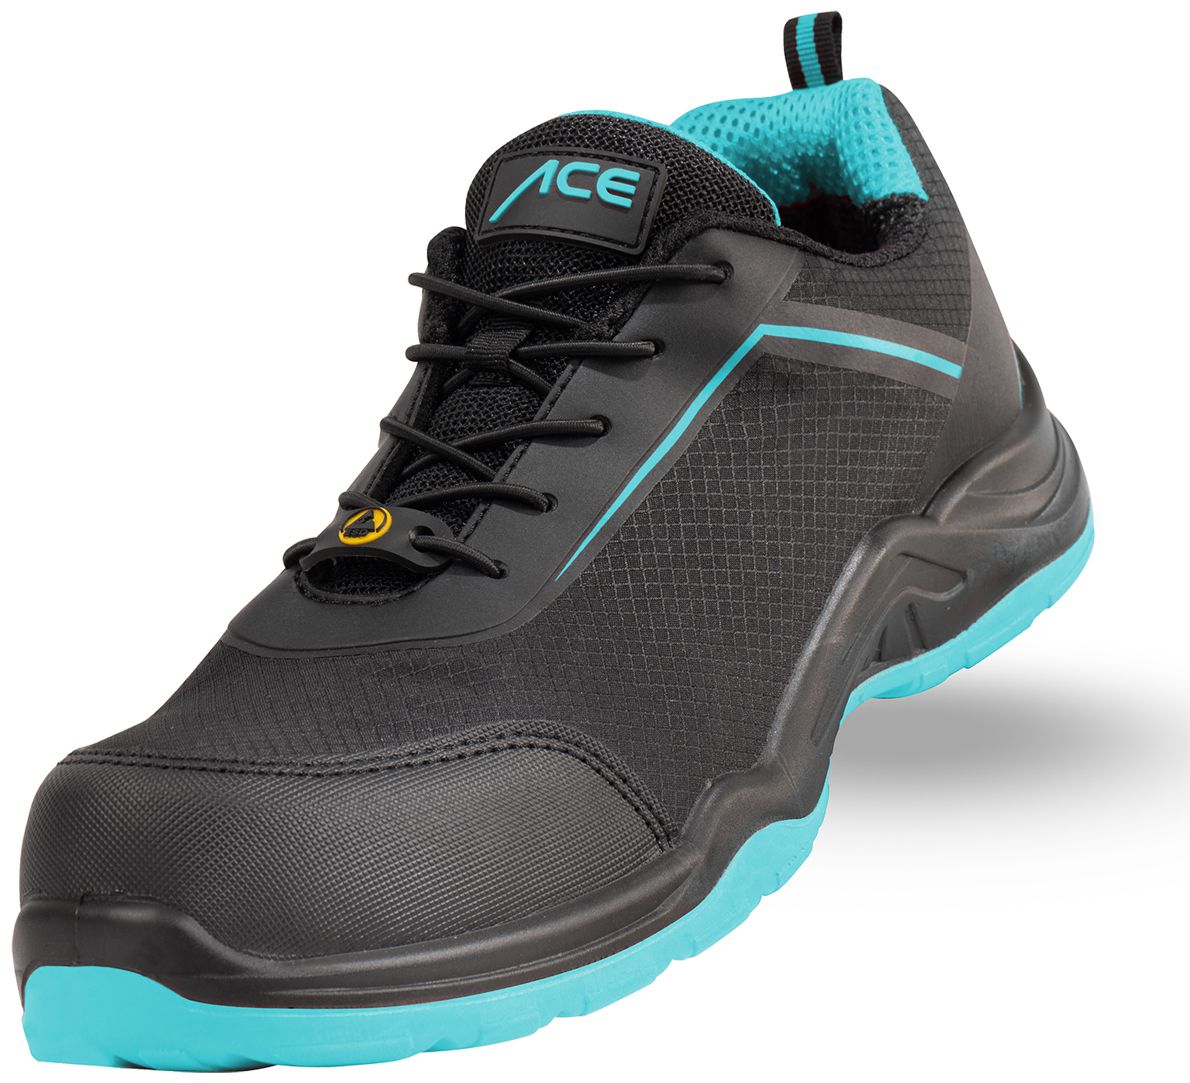 ACE Sapphire S1-P-Arbeits-Sneakers - mit Kunststoffkappe - Sicherheits-Schuhe für die Arbeit  - Schwarz/Blau - 44